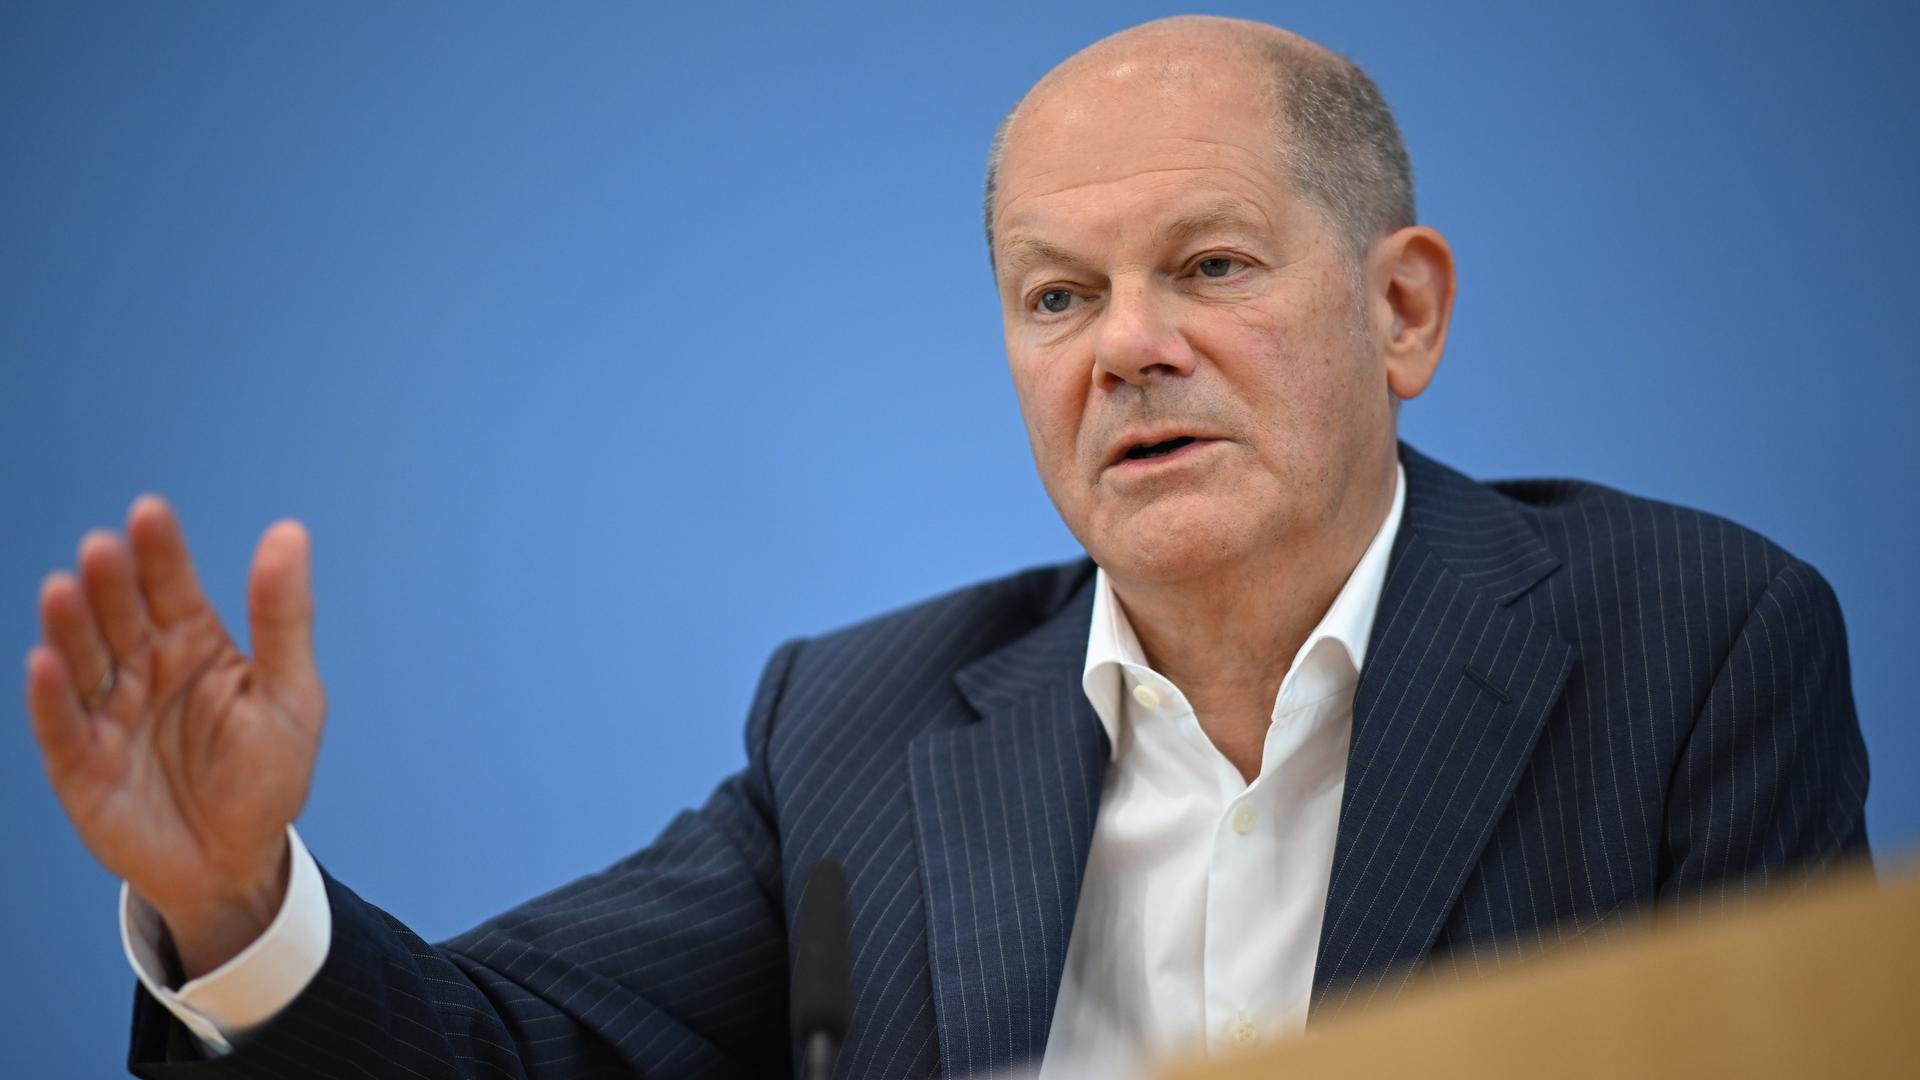 Bundeskanzler Olaf Scholz (SPD) äußerte sich auf seiner Sommer-Pressekonferenz in der Bundespressekonferenz zu aktuellen Themen der Innen- und Außenpolitik.